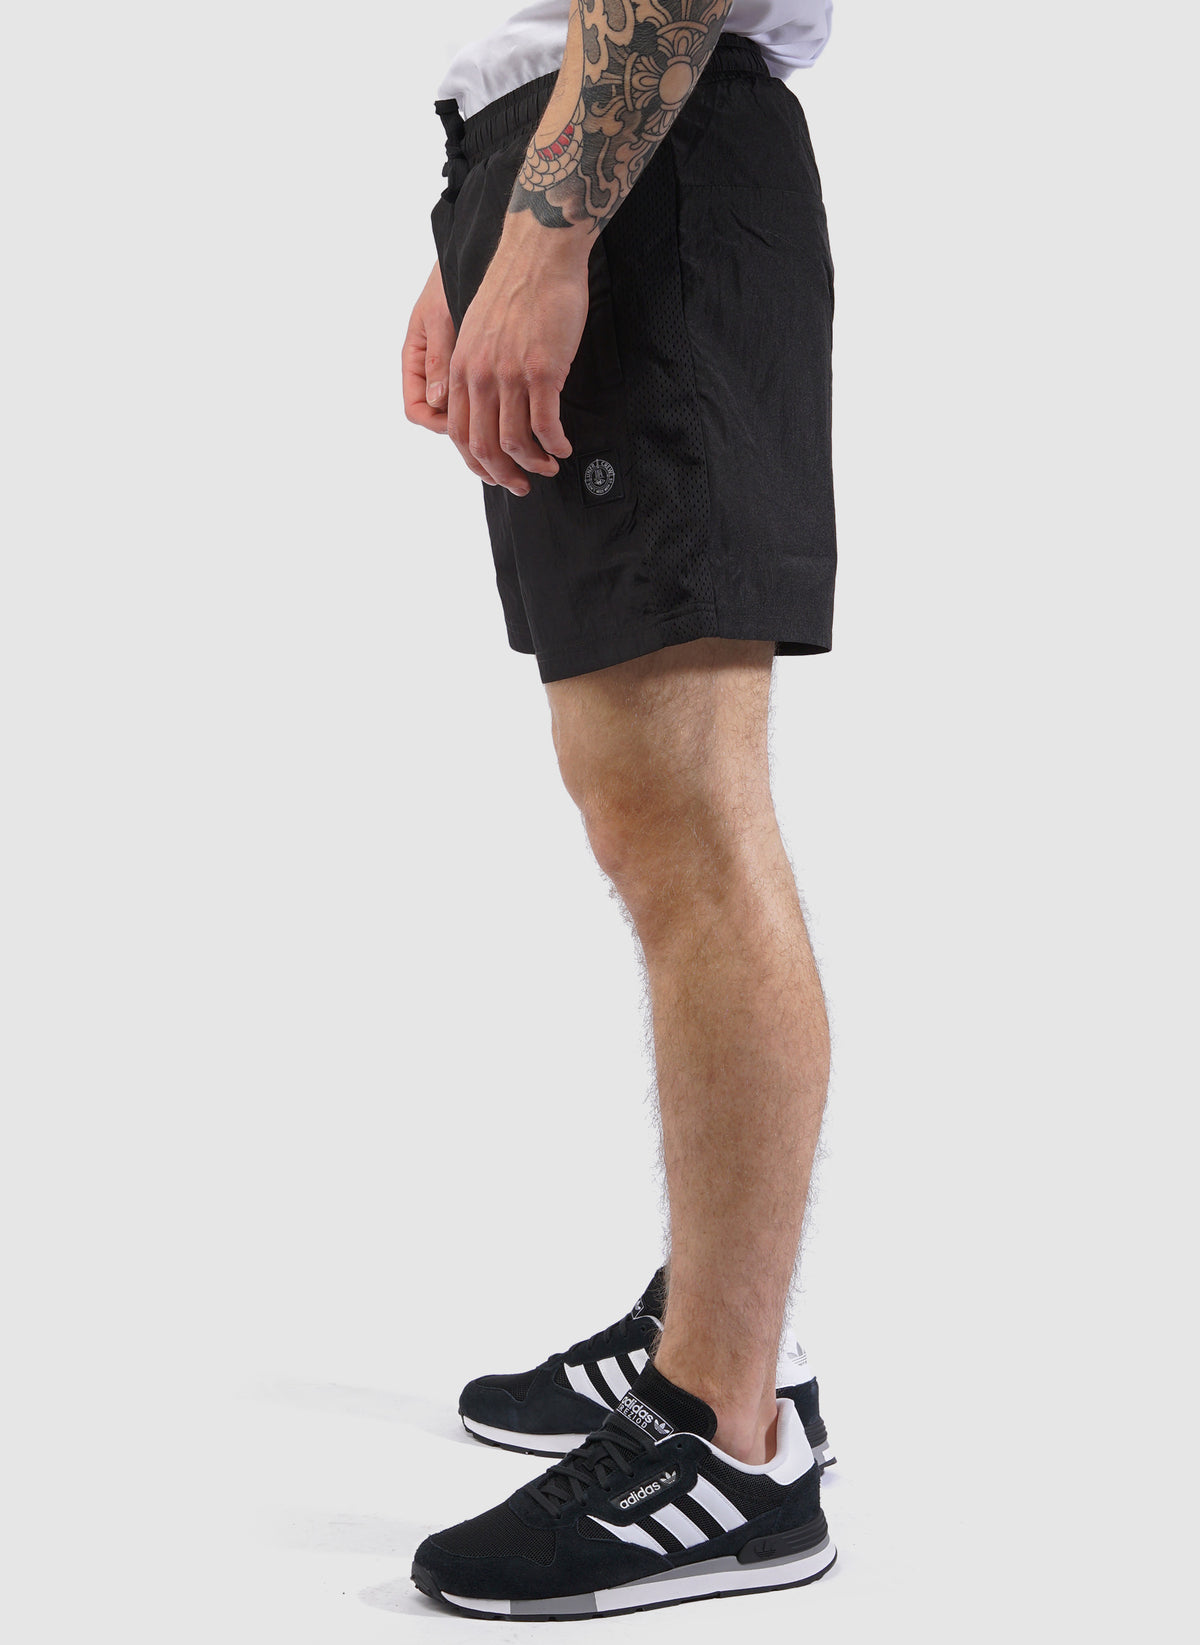 DMWU Patch Mesh Shorts - Black